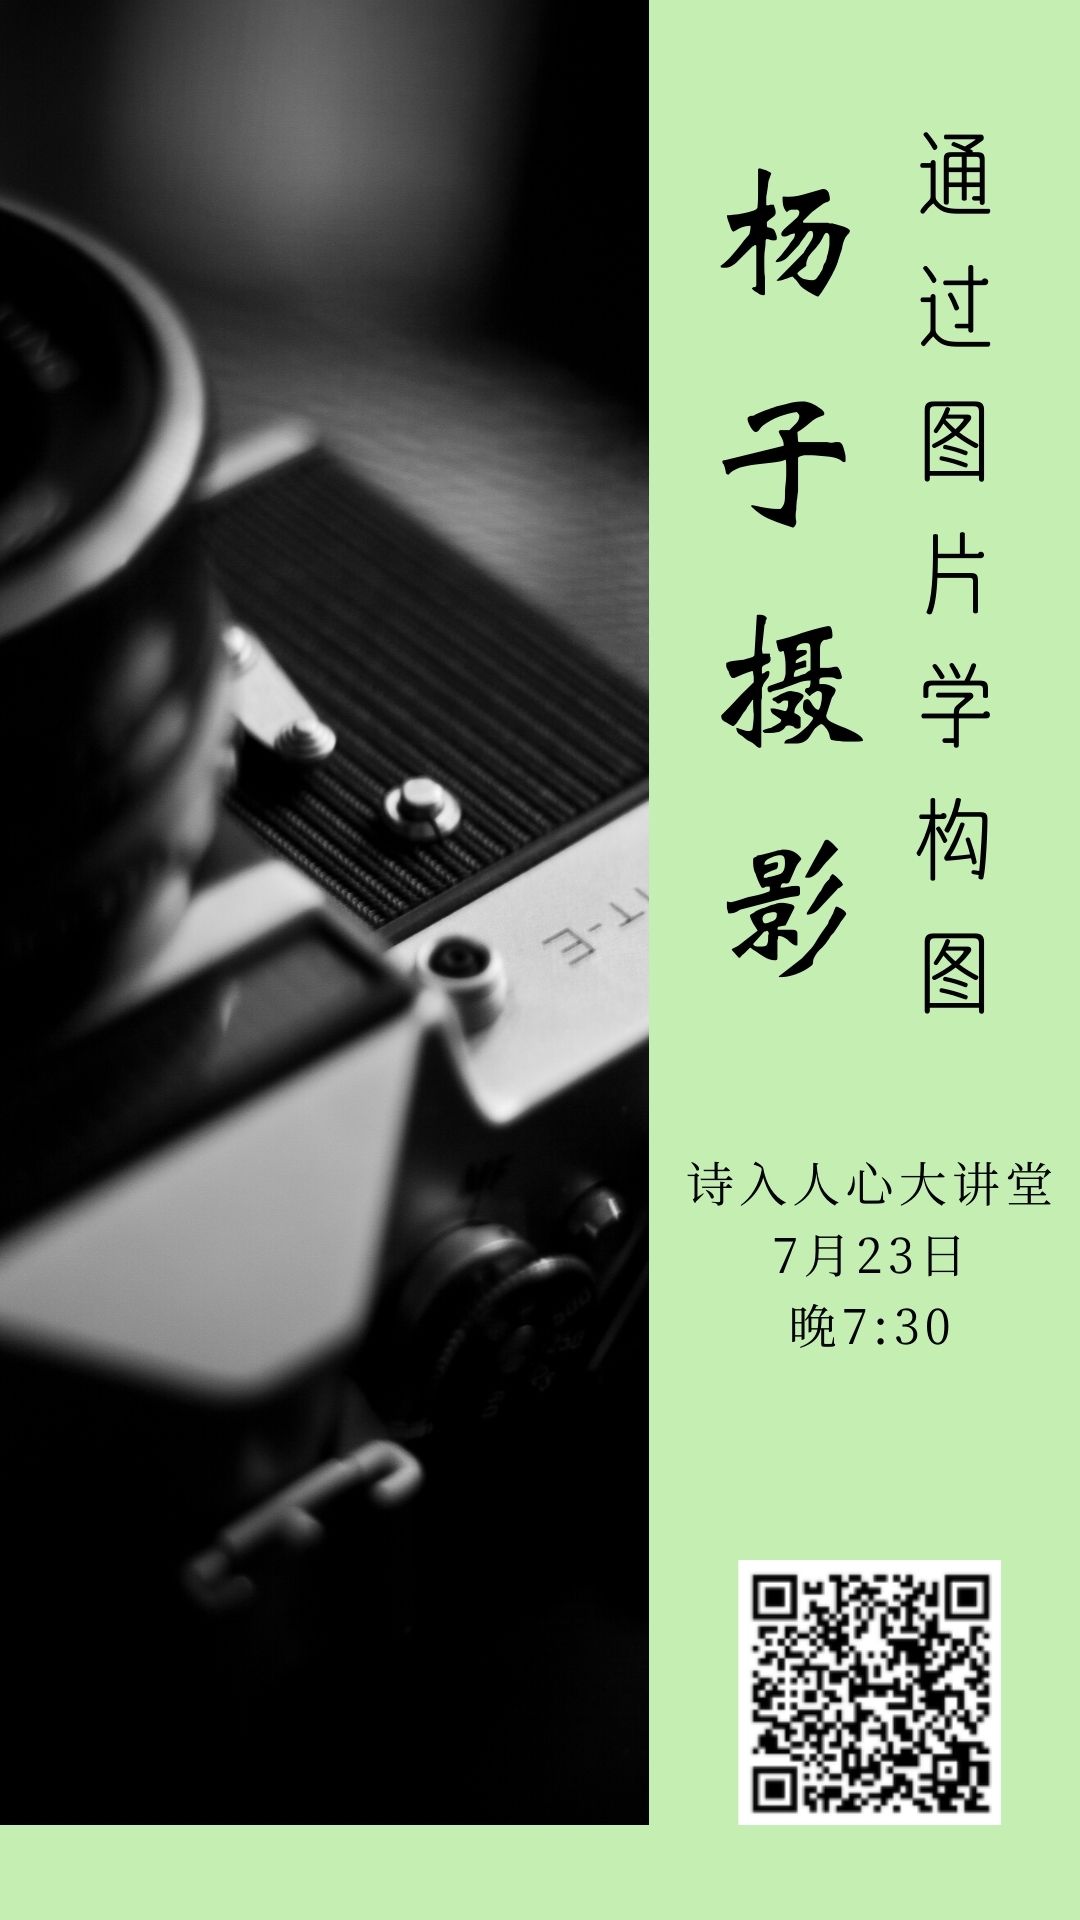 白绿色摄影社徕卡相机照片校园中文手机海报 (1).jpg